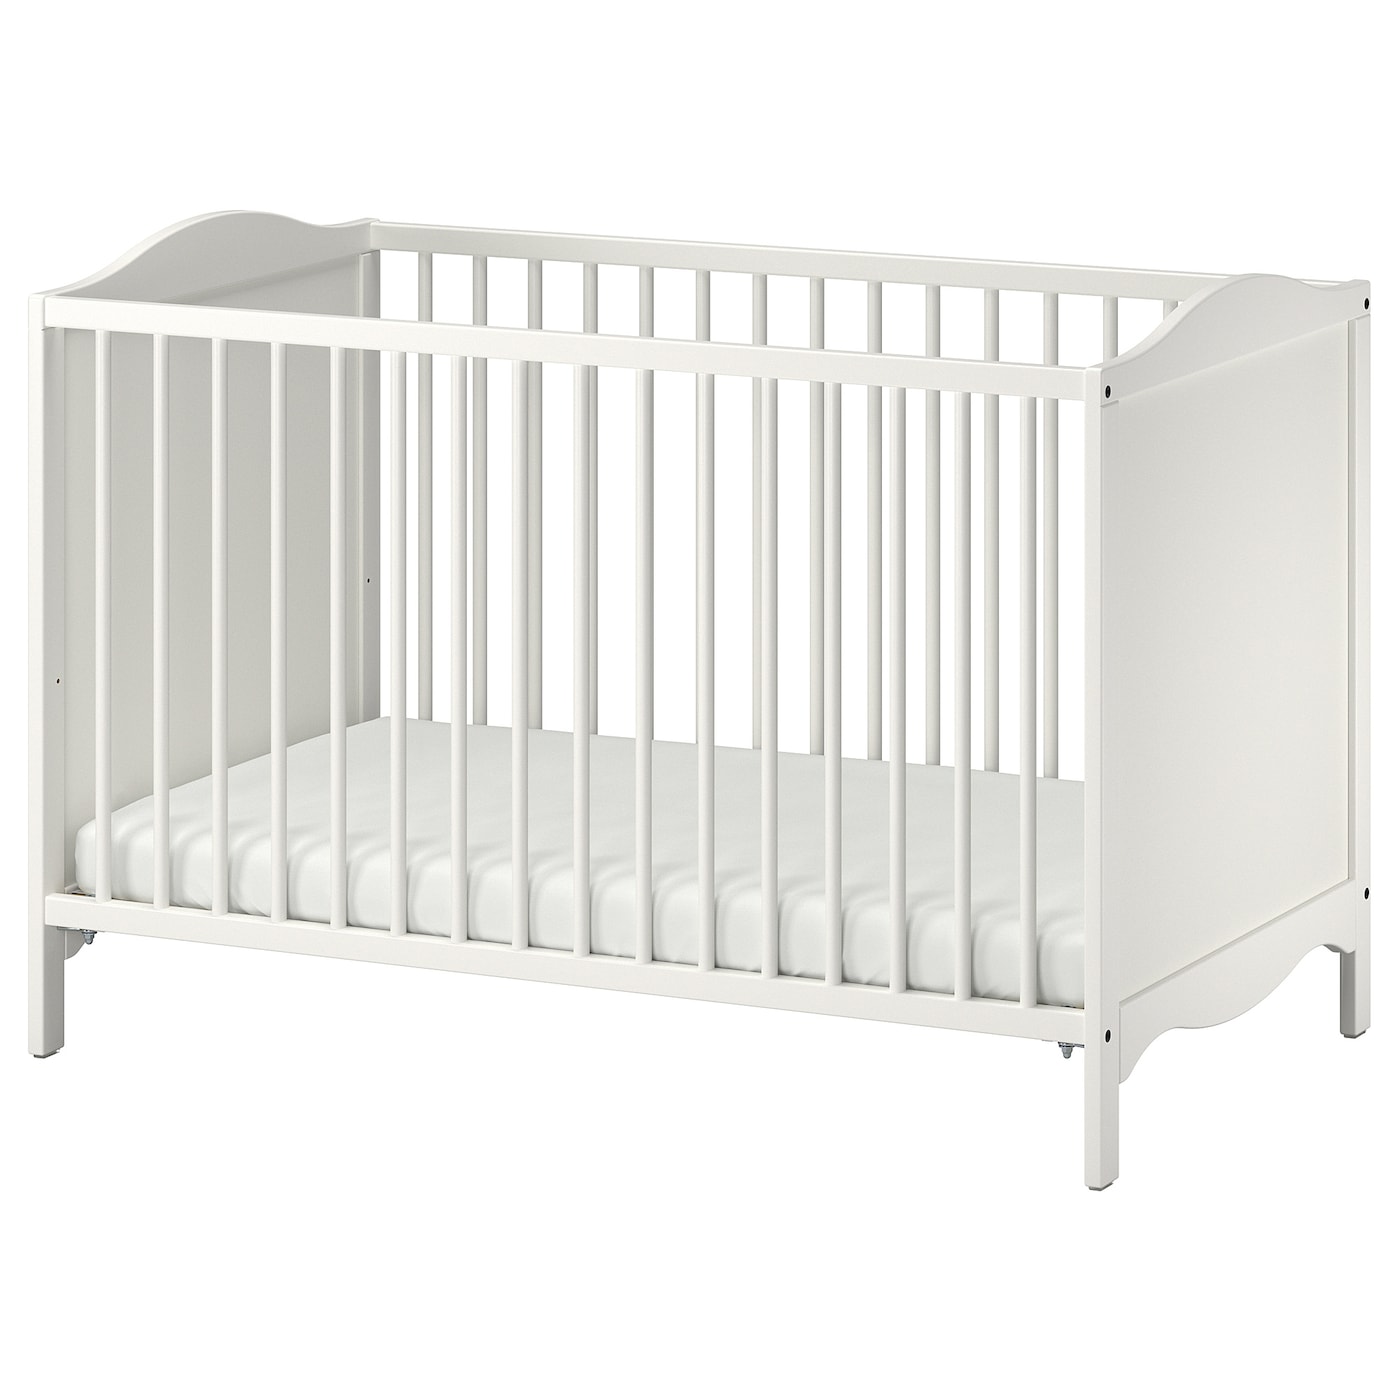 Кровать для новорожденных - IKEA SMÅGÖRA/SMAGORA, 60x120 см, белый, СМОГЁРА ИКЕА